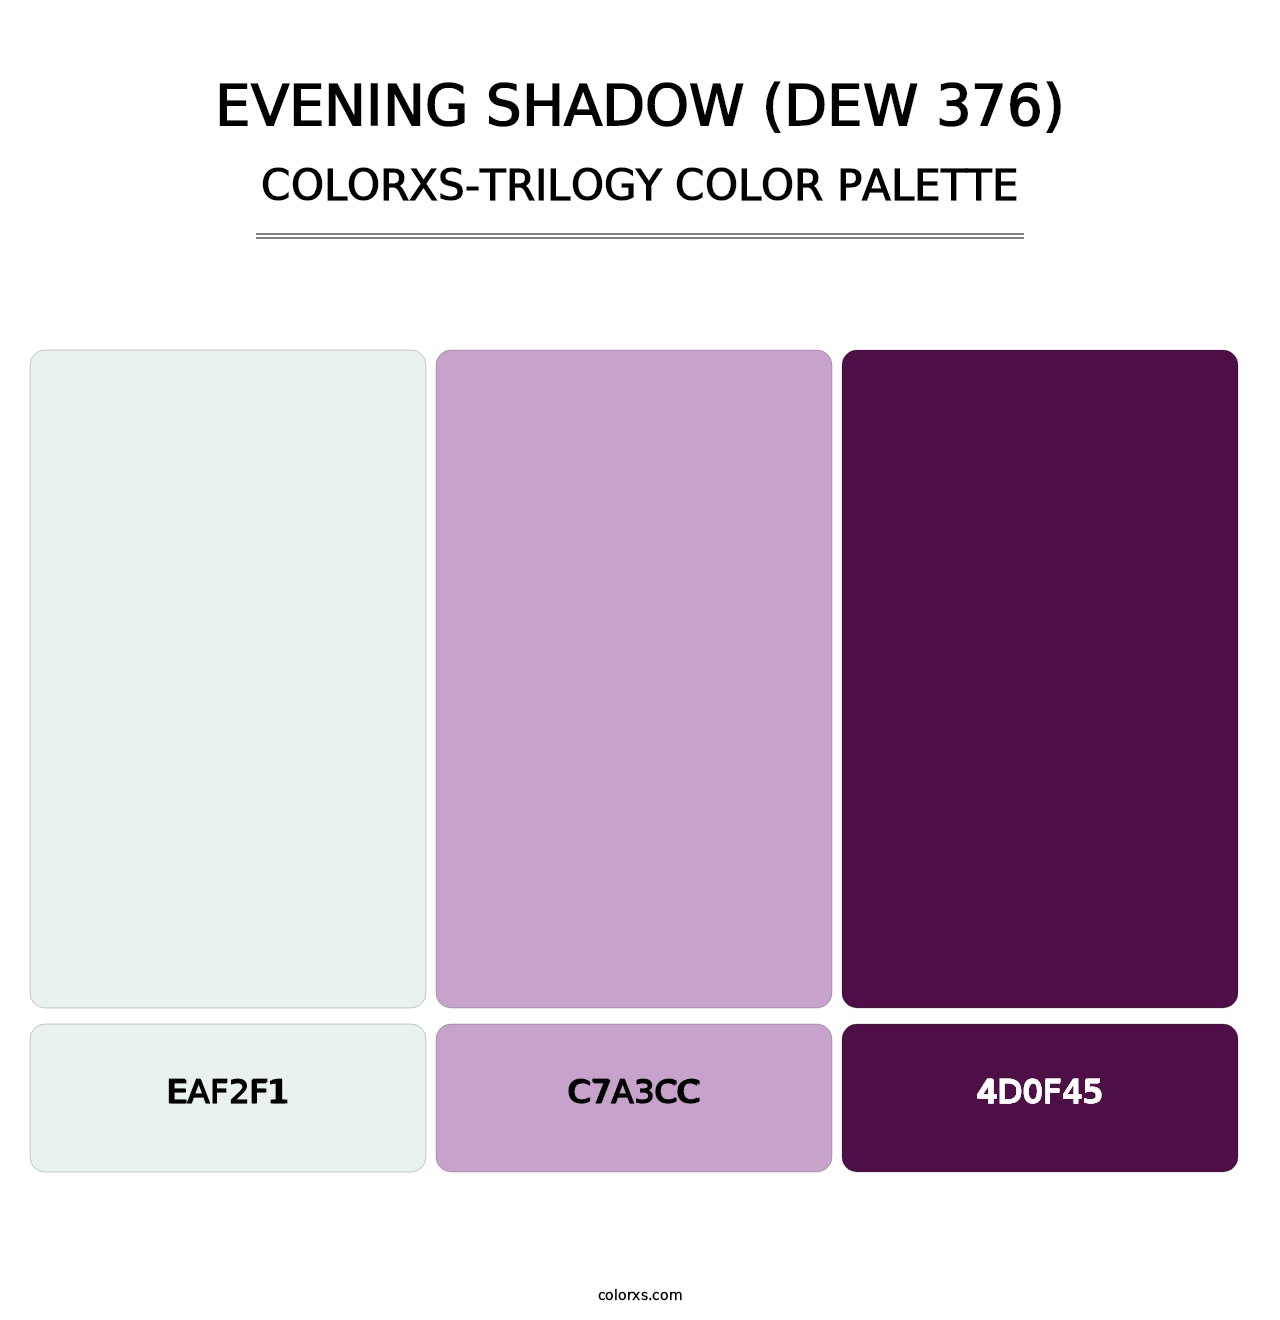 Evening Shadow (DEW 376) - Colorxs Trilogy Palette